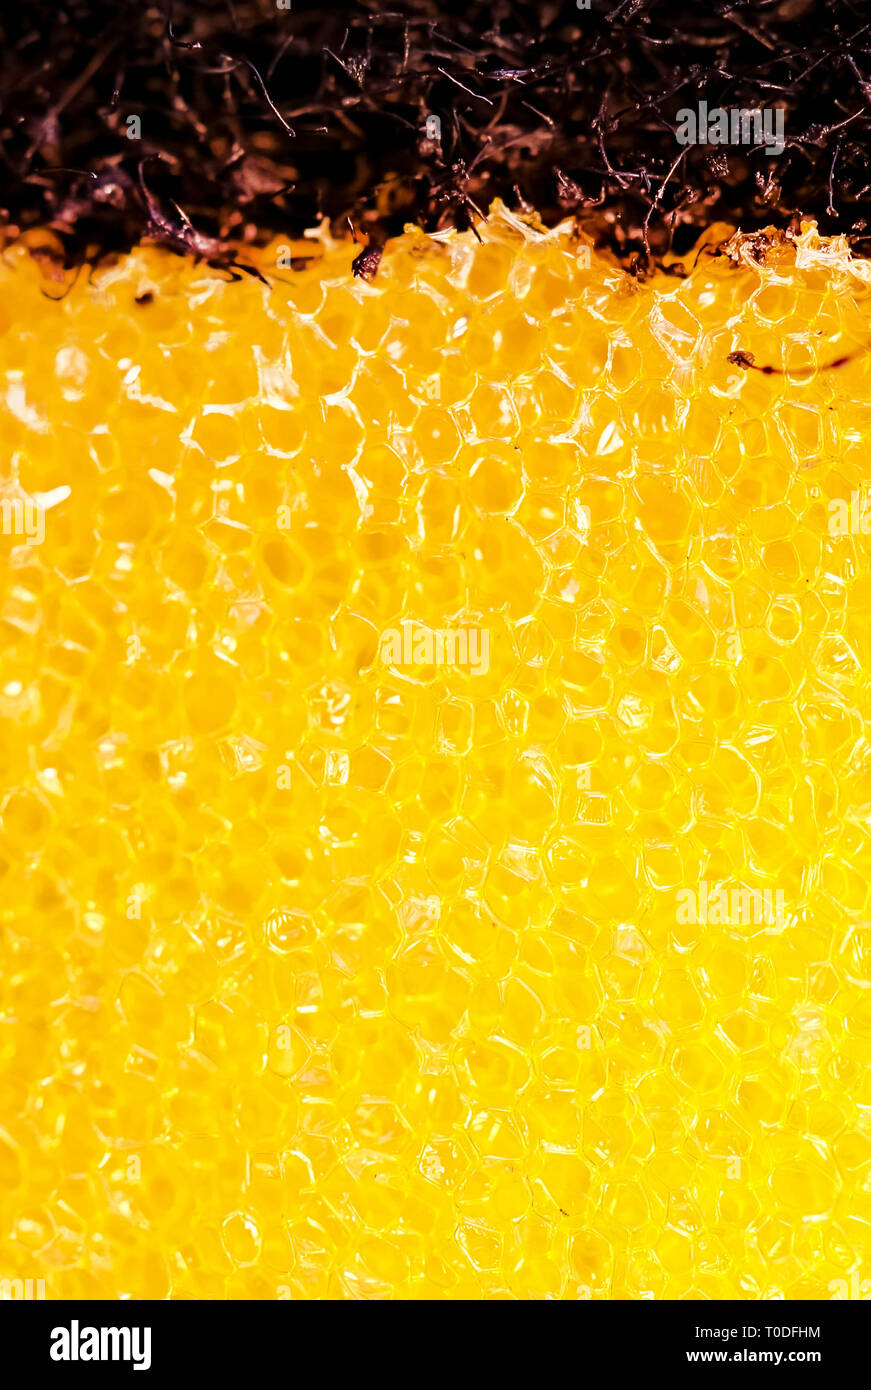 plastic sponge wash up background Stock Photo